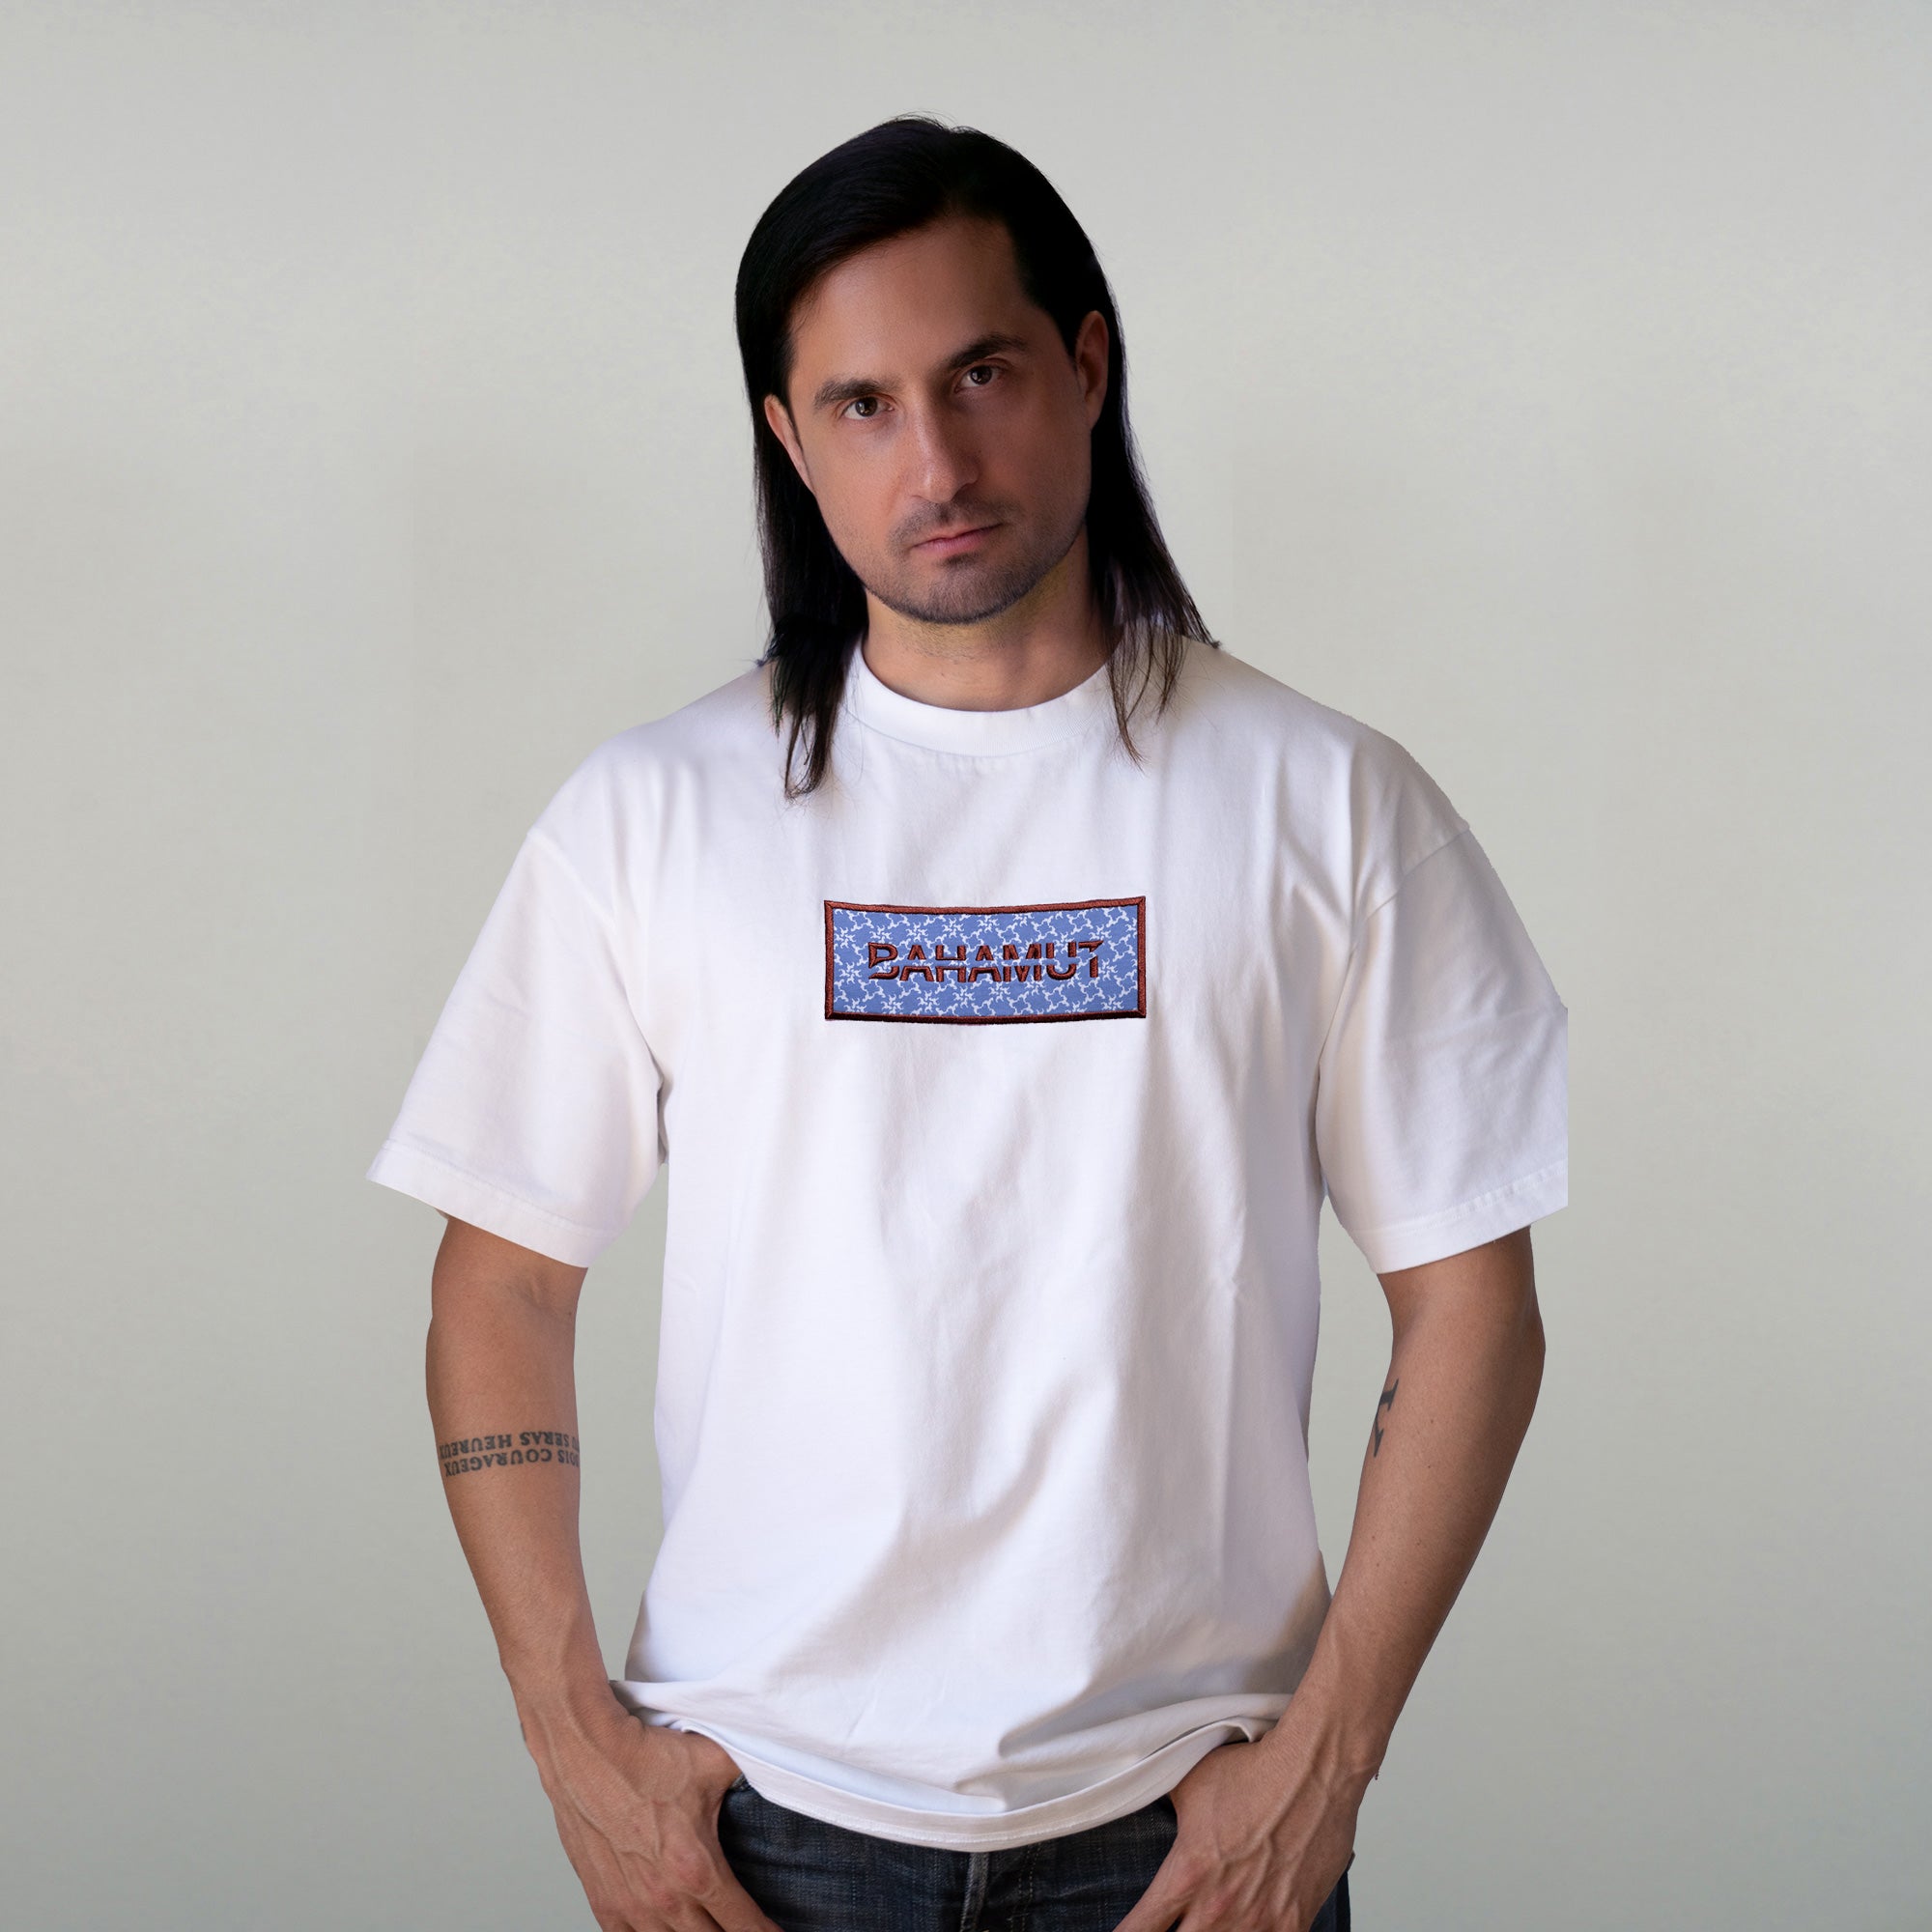 T-shirt "Logostar" porté par un model masculin vu de face.